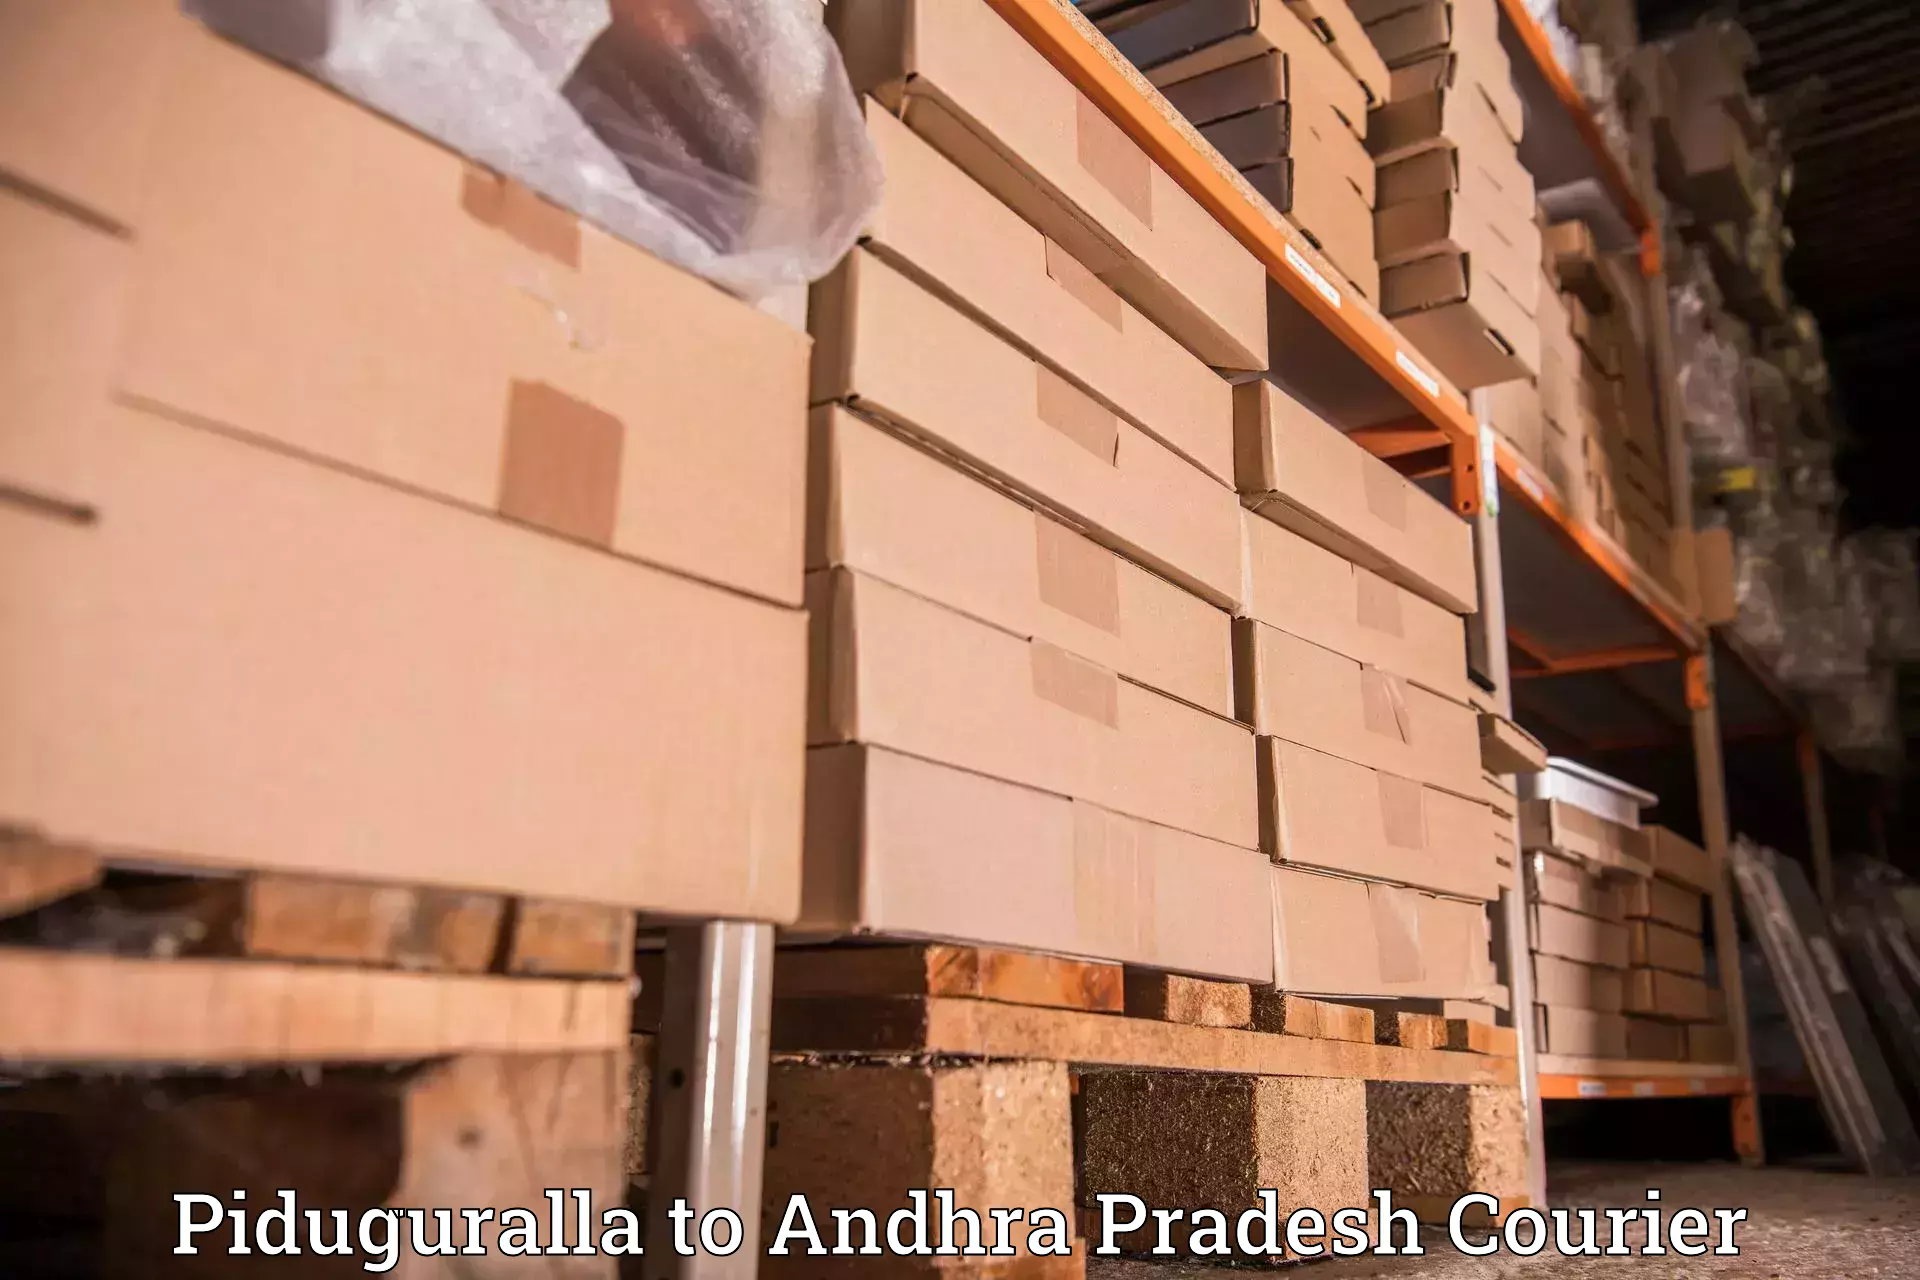 Local delivery service Piduguralla to Tuni